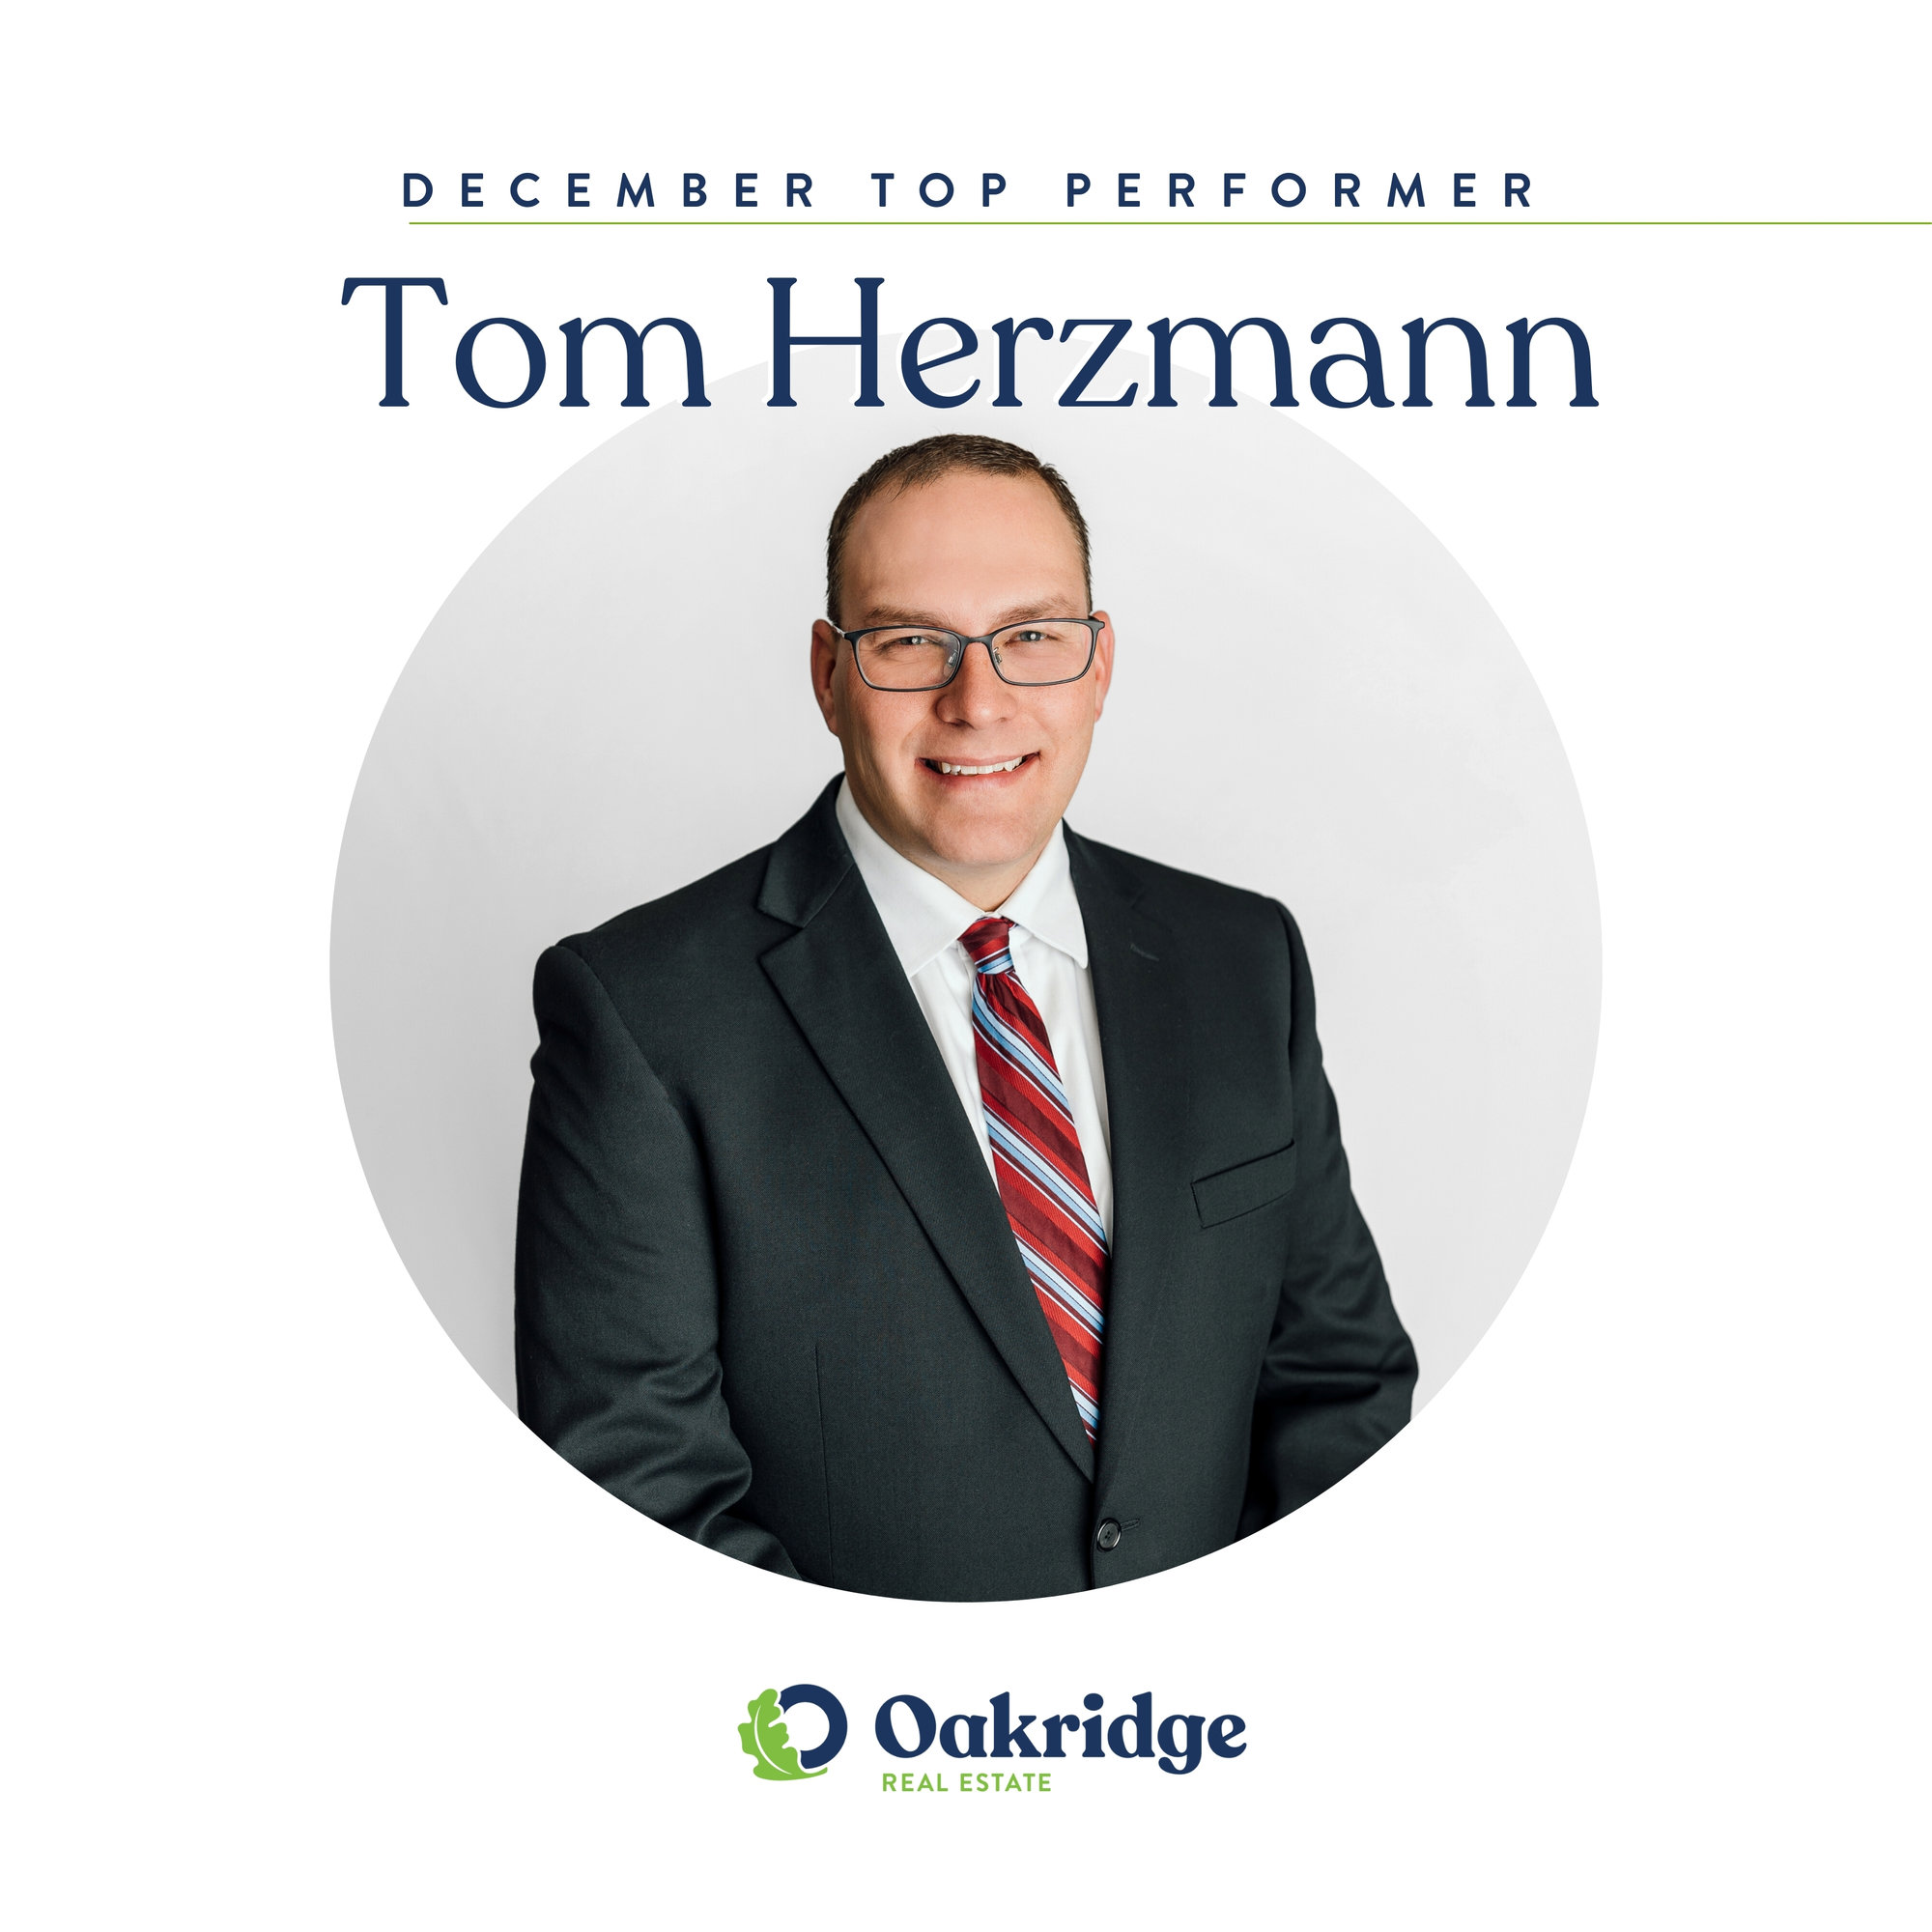 tom herzmann oakridge real estate december top performer 